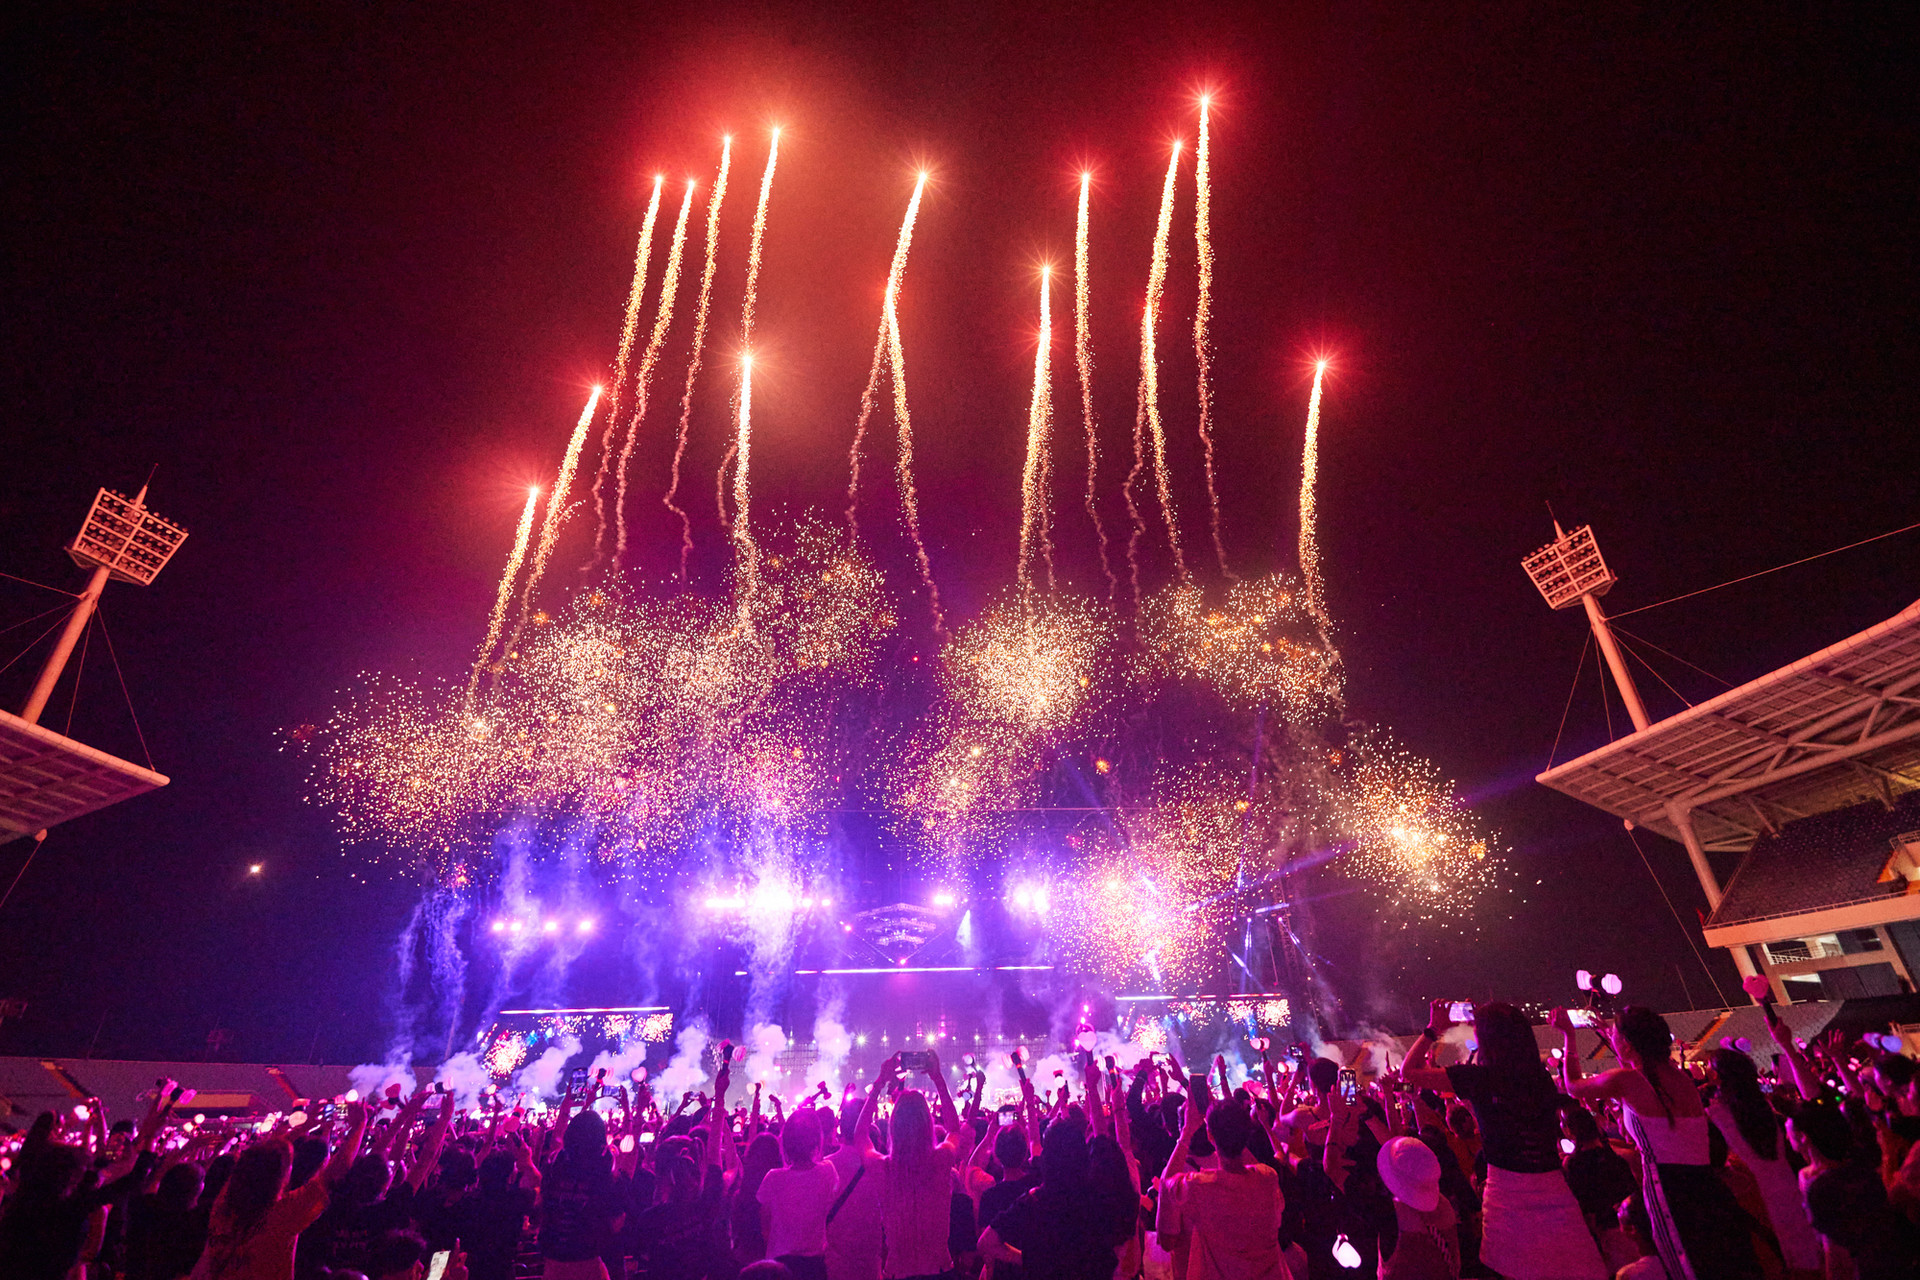 Thành công trong concert của BLACKPINK sẽ khiến các nghệ sĩ quốc tế chú ý hơn tới Việt Nam.